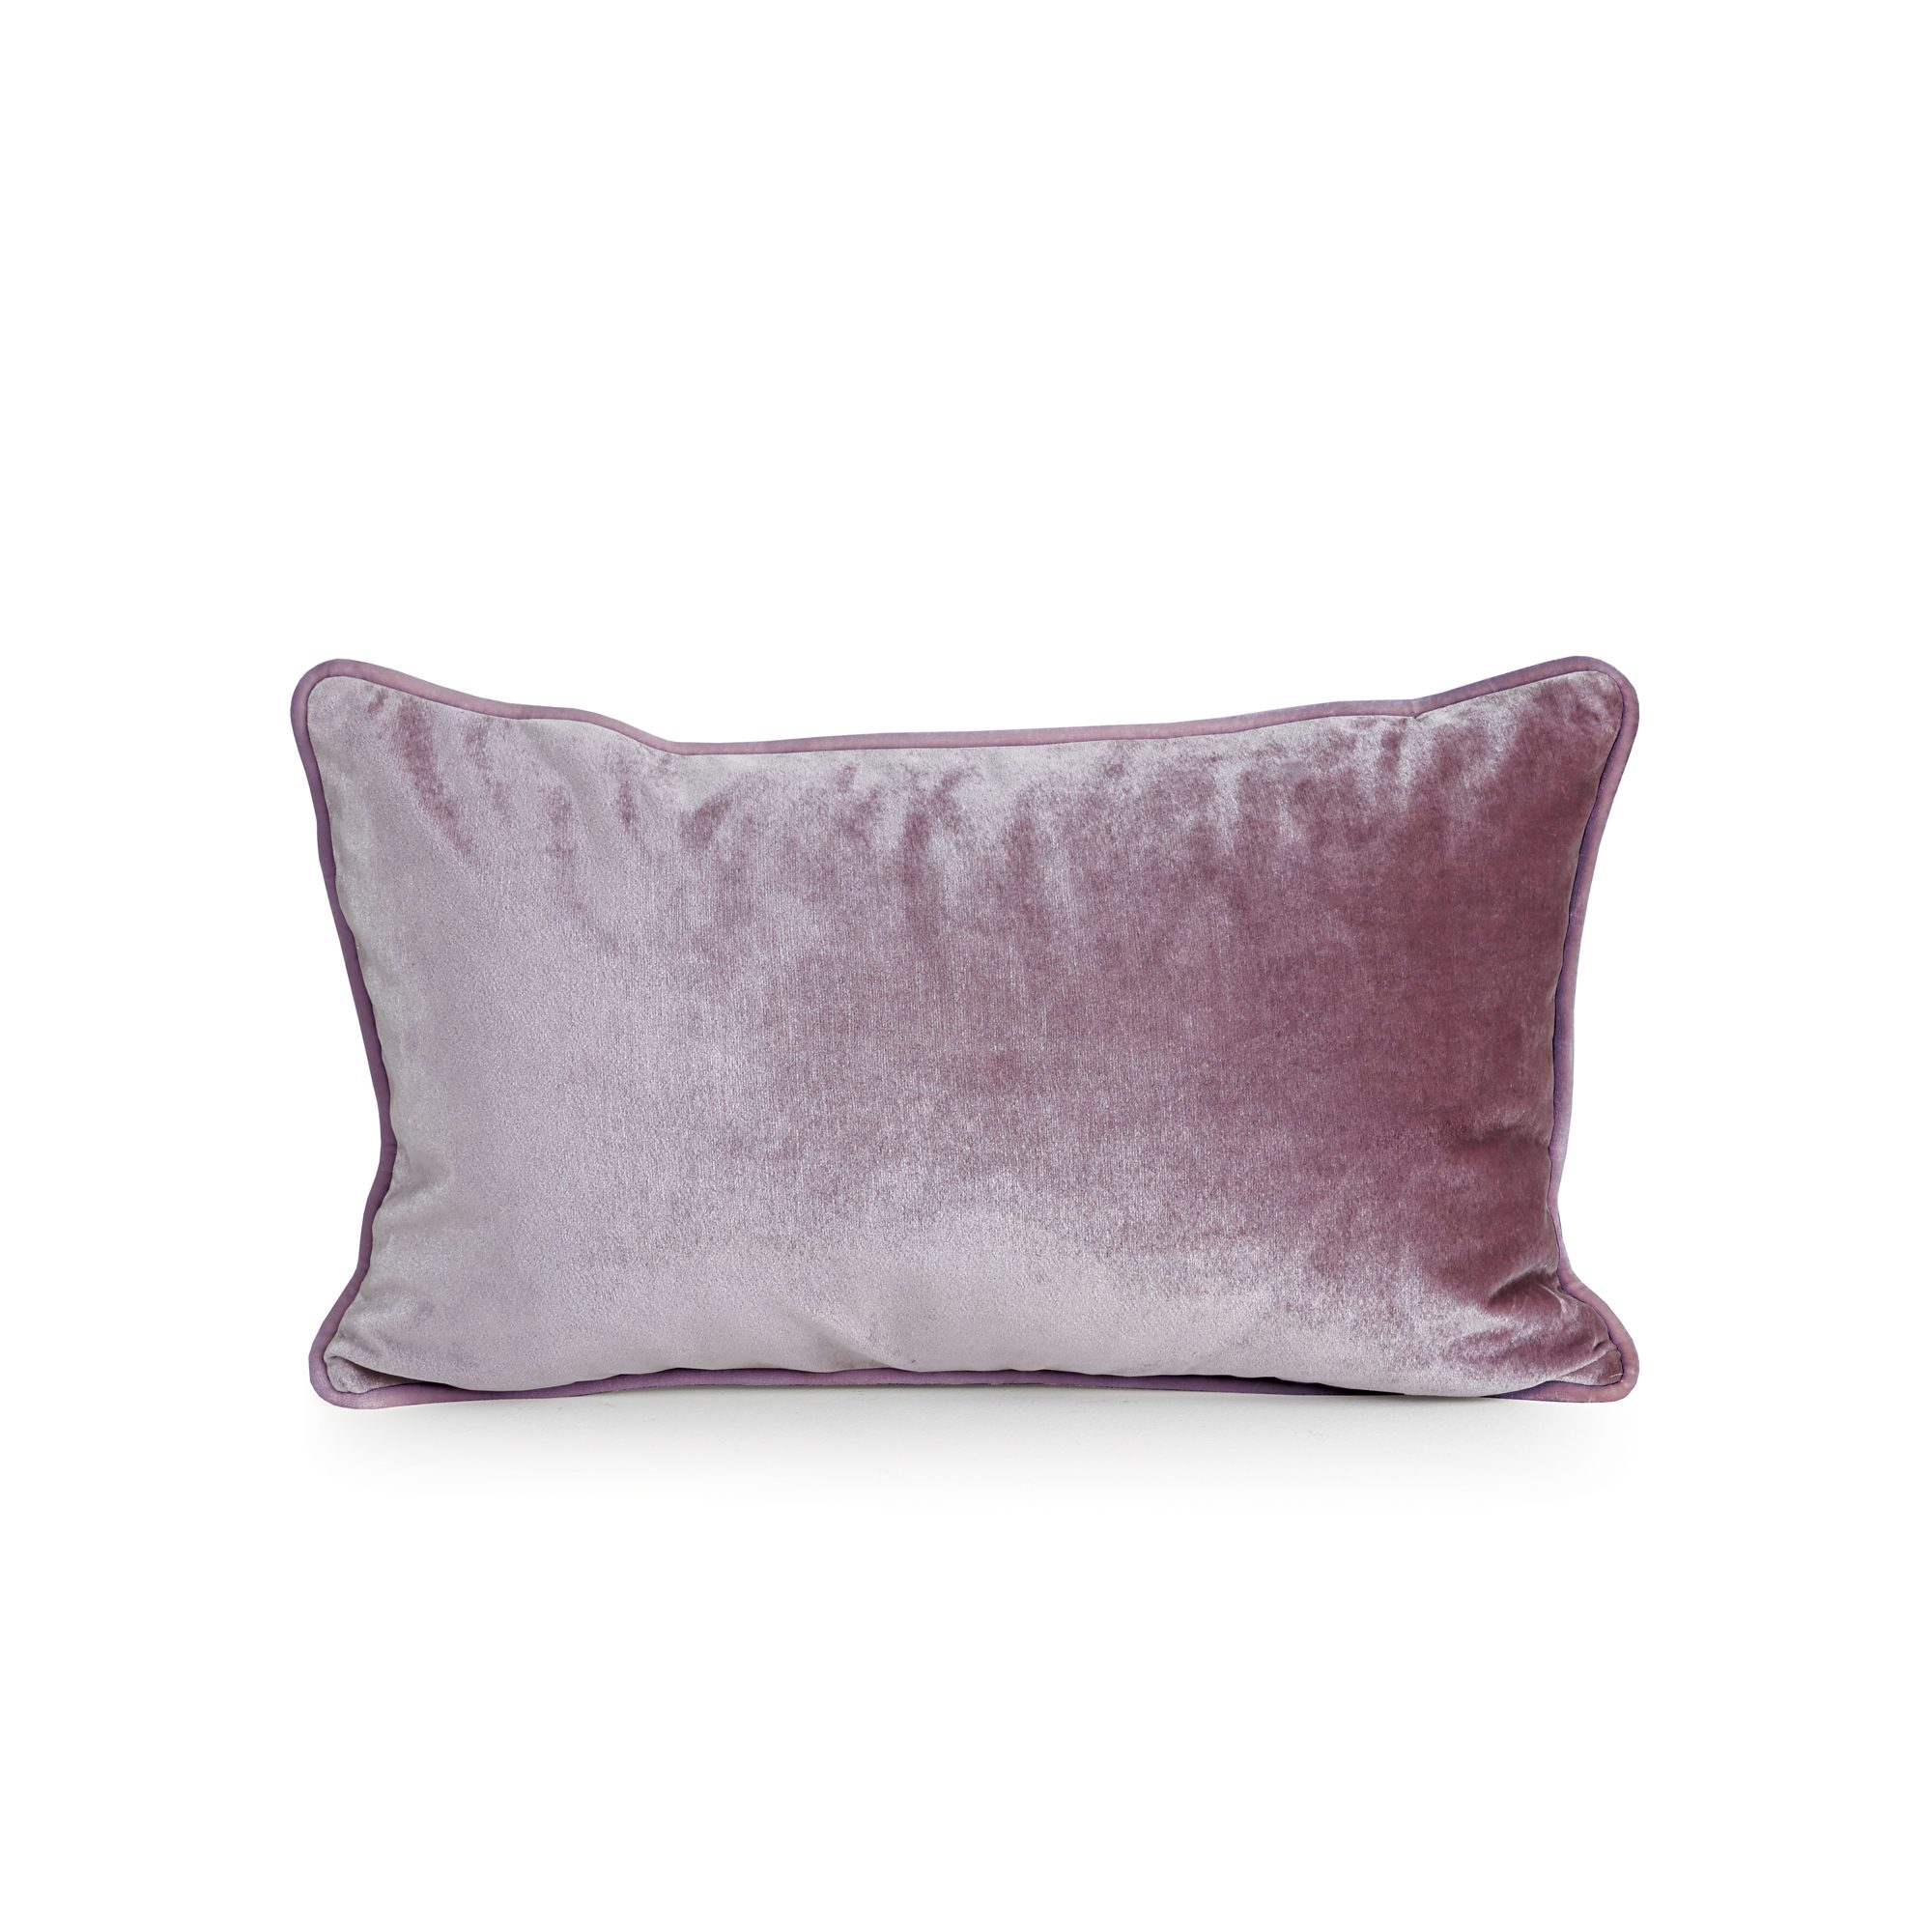 Porpara Purple Velvet Cushion